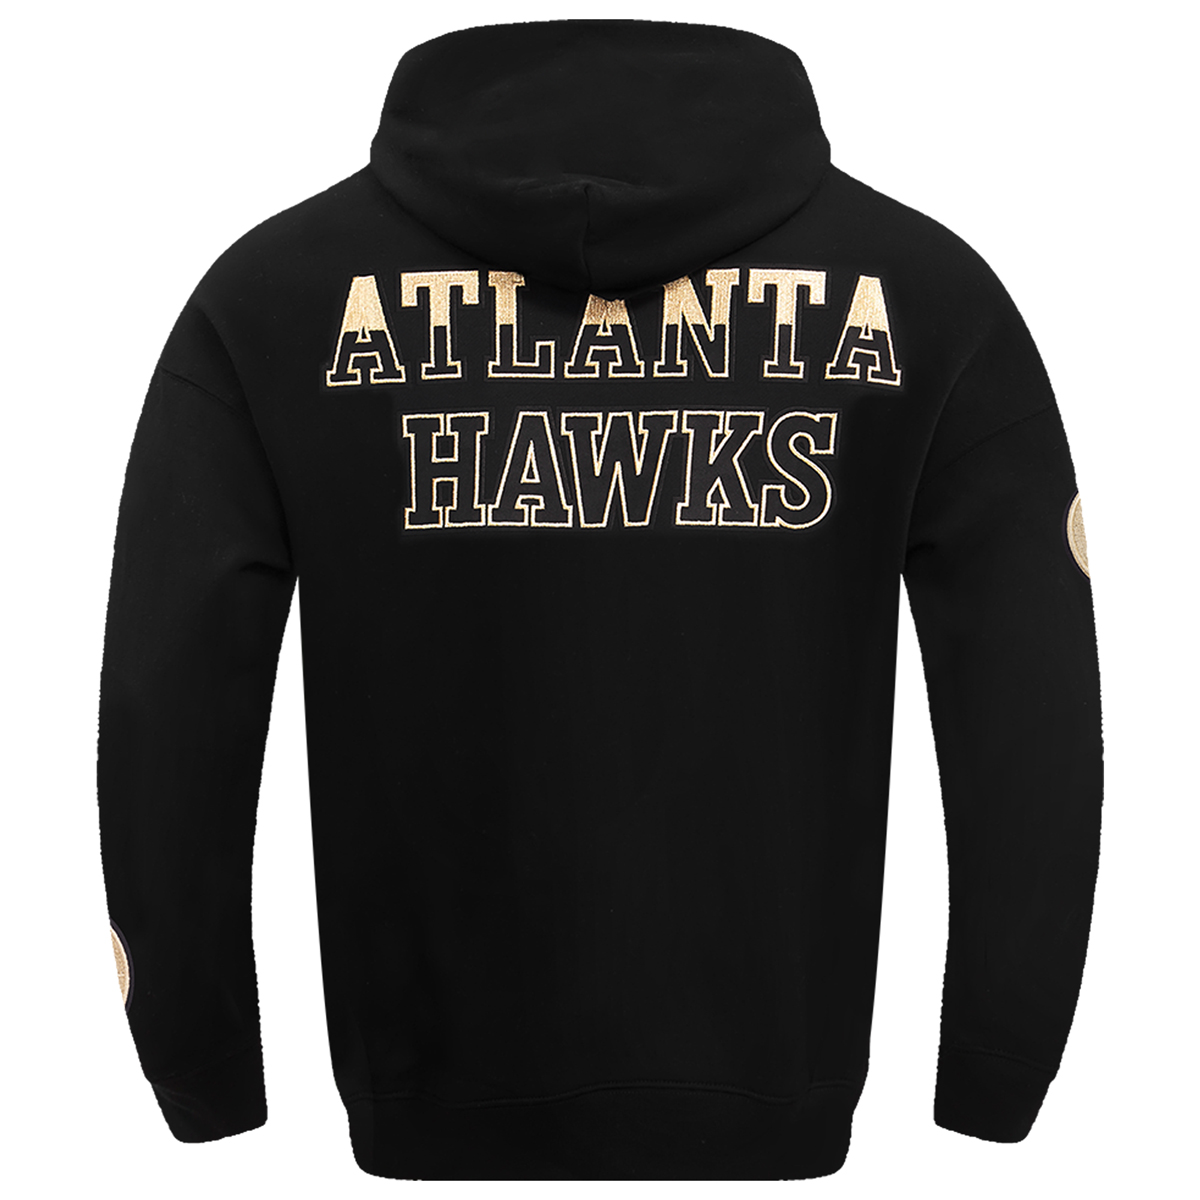 Pro-Standard-Black-Gold-Atlanta-Hawks-Hoodie-2